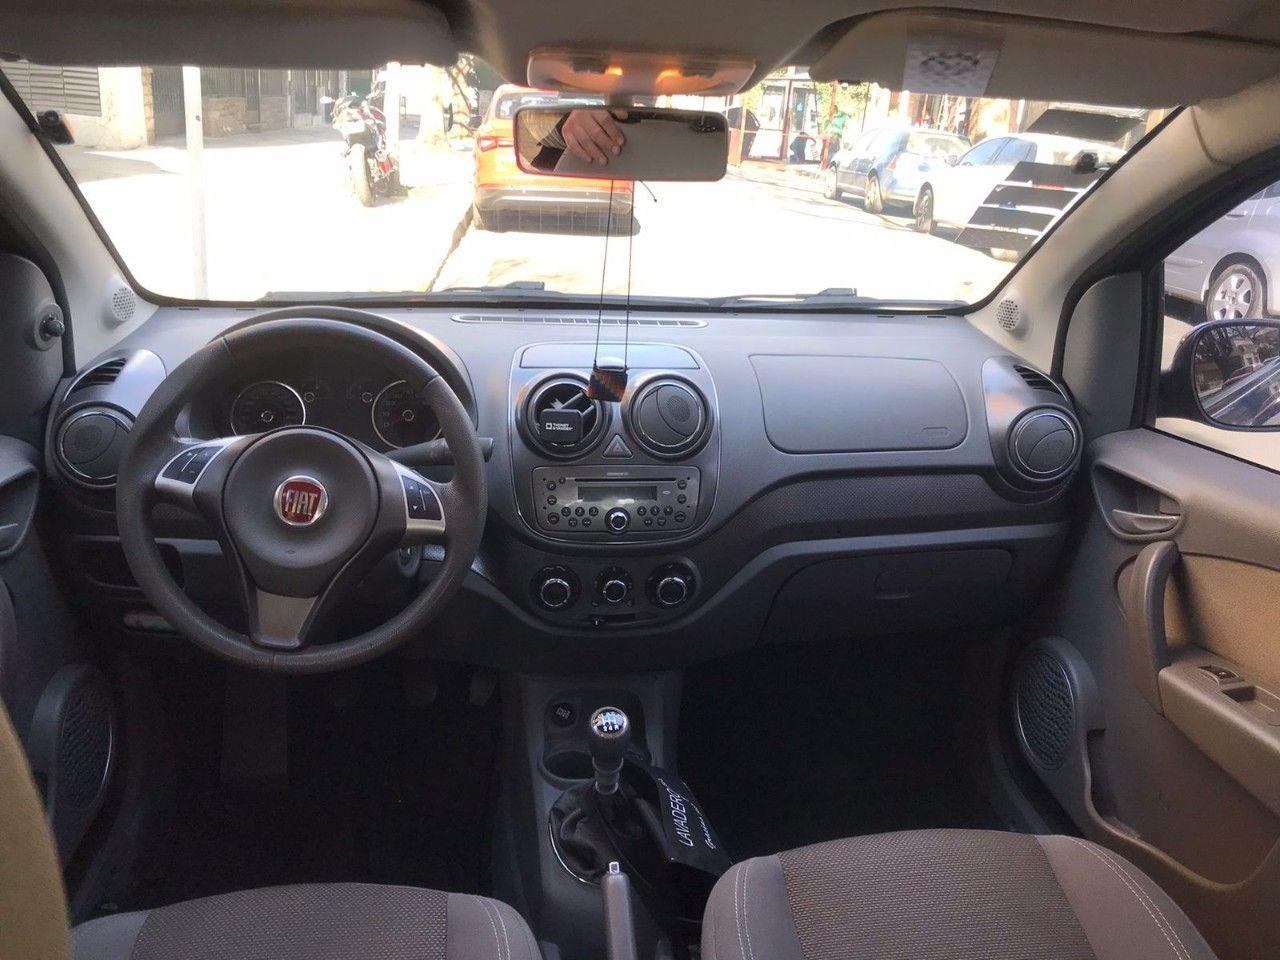 Fiat Nuevo Palio Usado en Buenos Aires, deRuedas